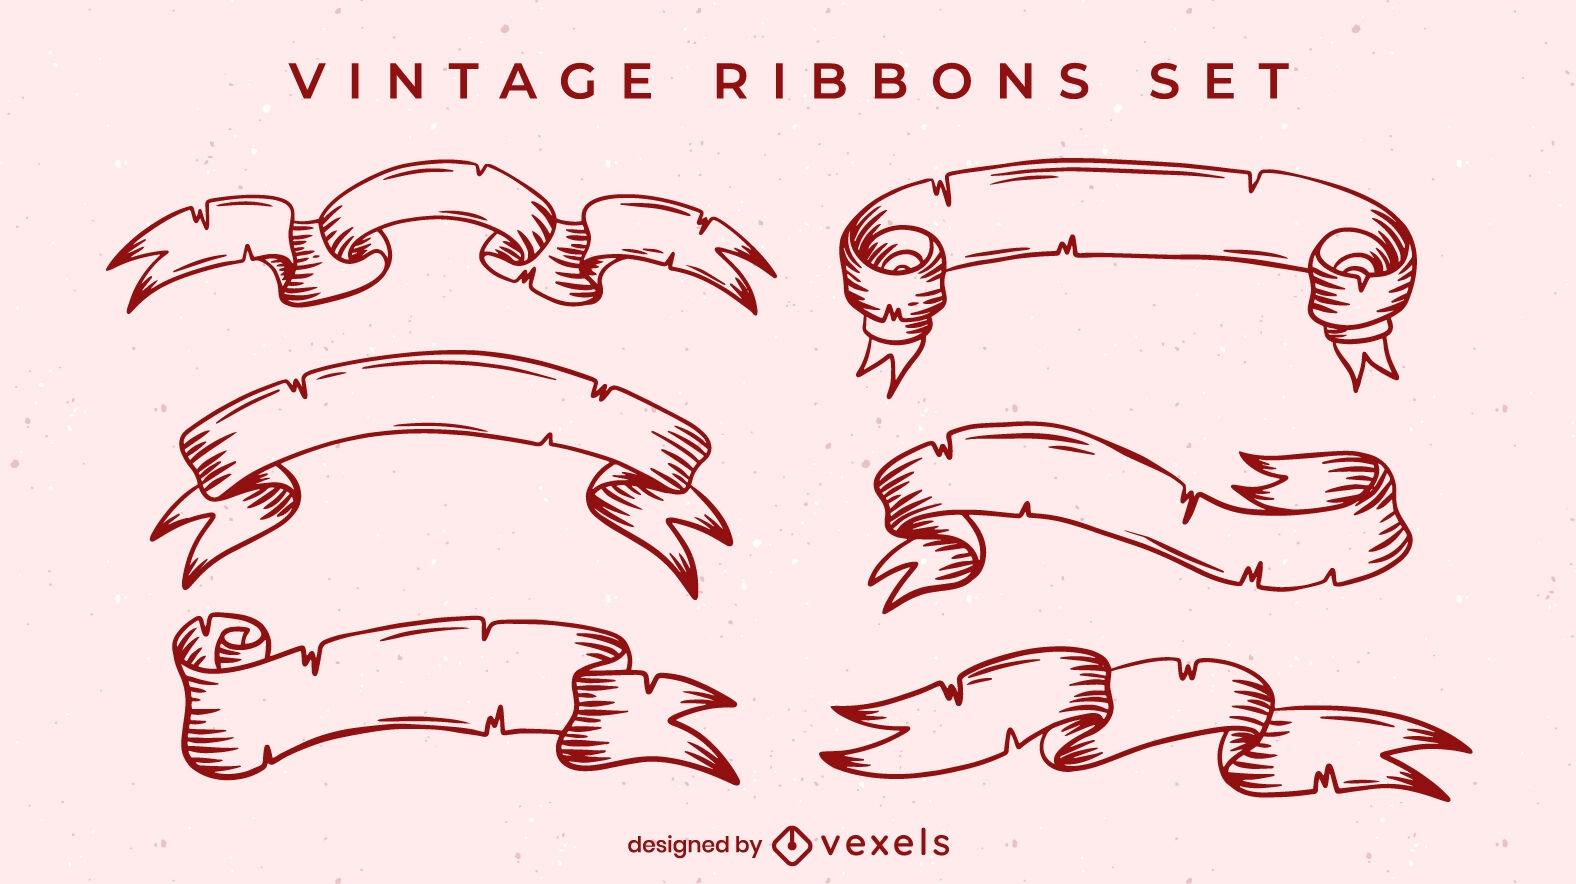 Vintage ribbons set design